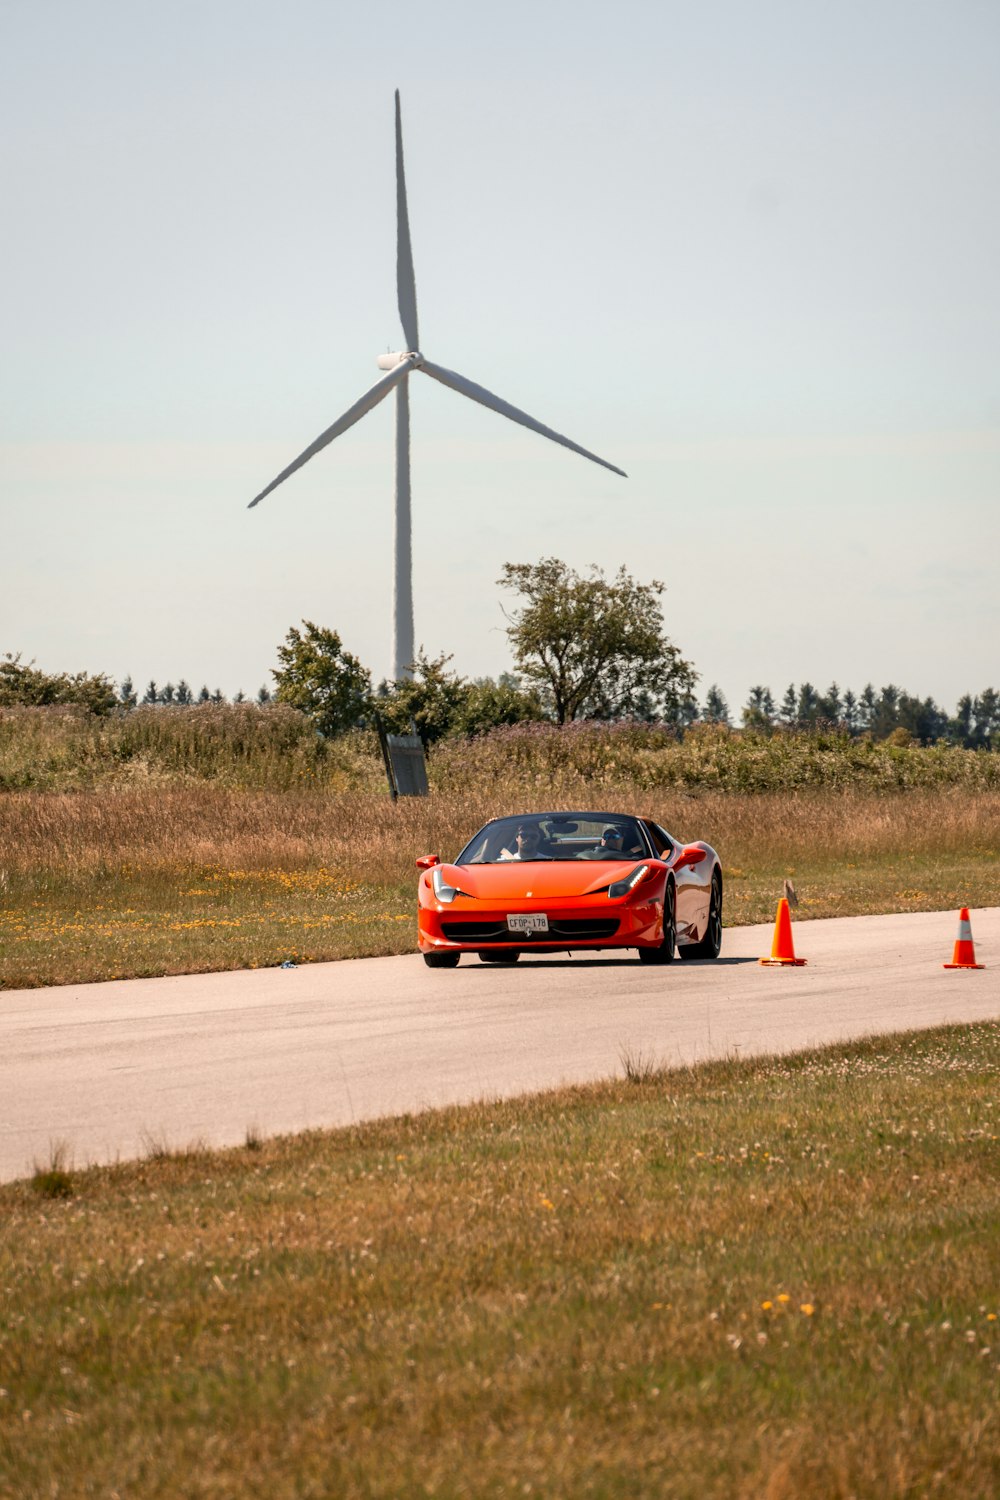 orangefarbenes Ferrari 458 Coupé unterwegs auf der Straße in der Nähe der Turbine